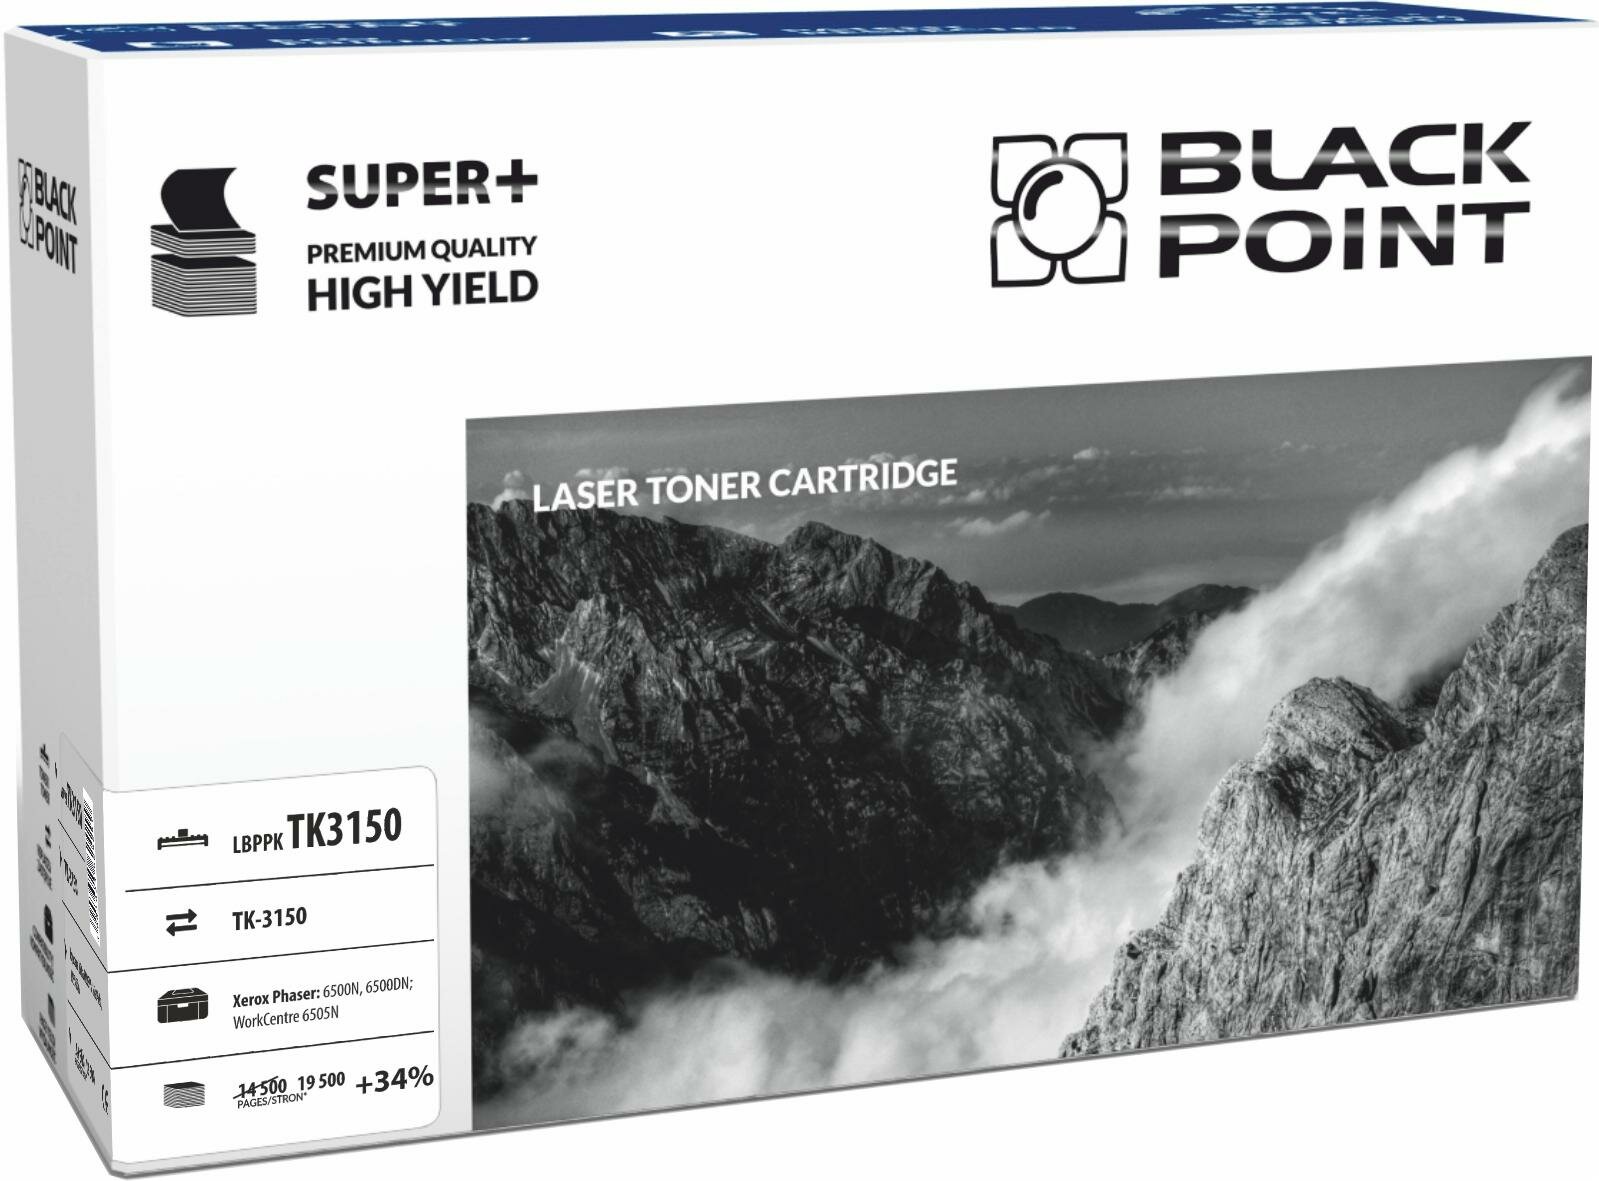 Toner laserowy Black Point Super Plus LBPPKTK3150 widok pod kątem na opakowanie